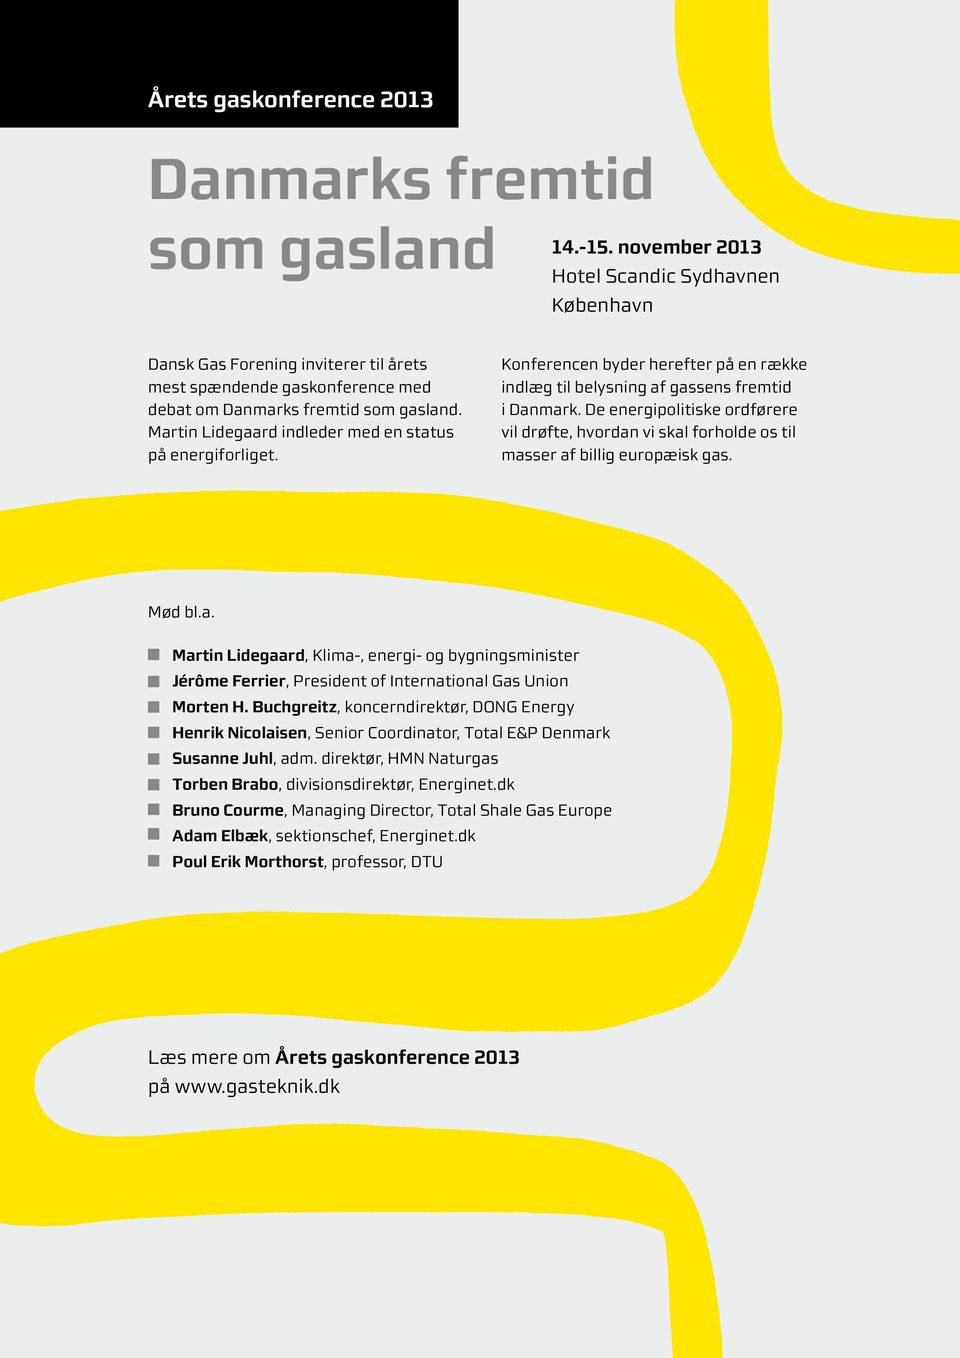 Martin Lidegaard indleder med en status på energiforliget. Konferencen byder herefter på en række indlæg til belysning af gassens fremtid i Danmark.